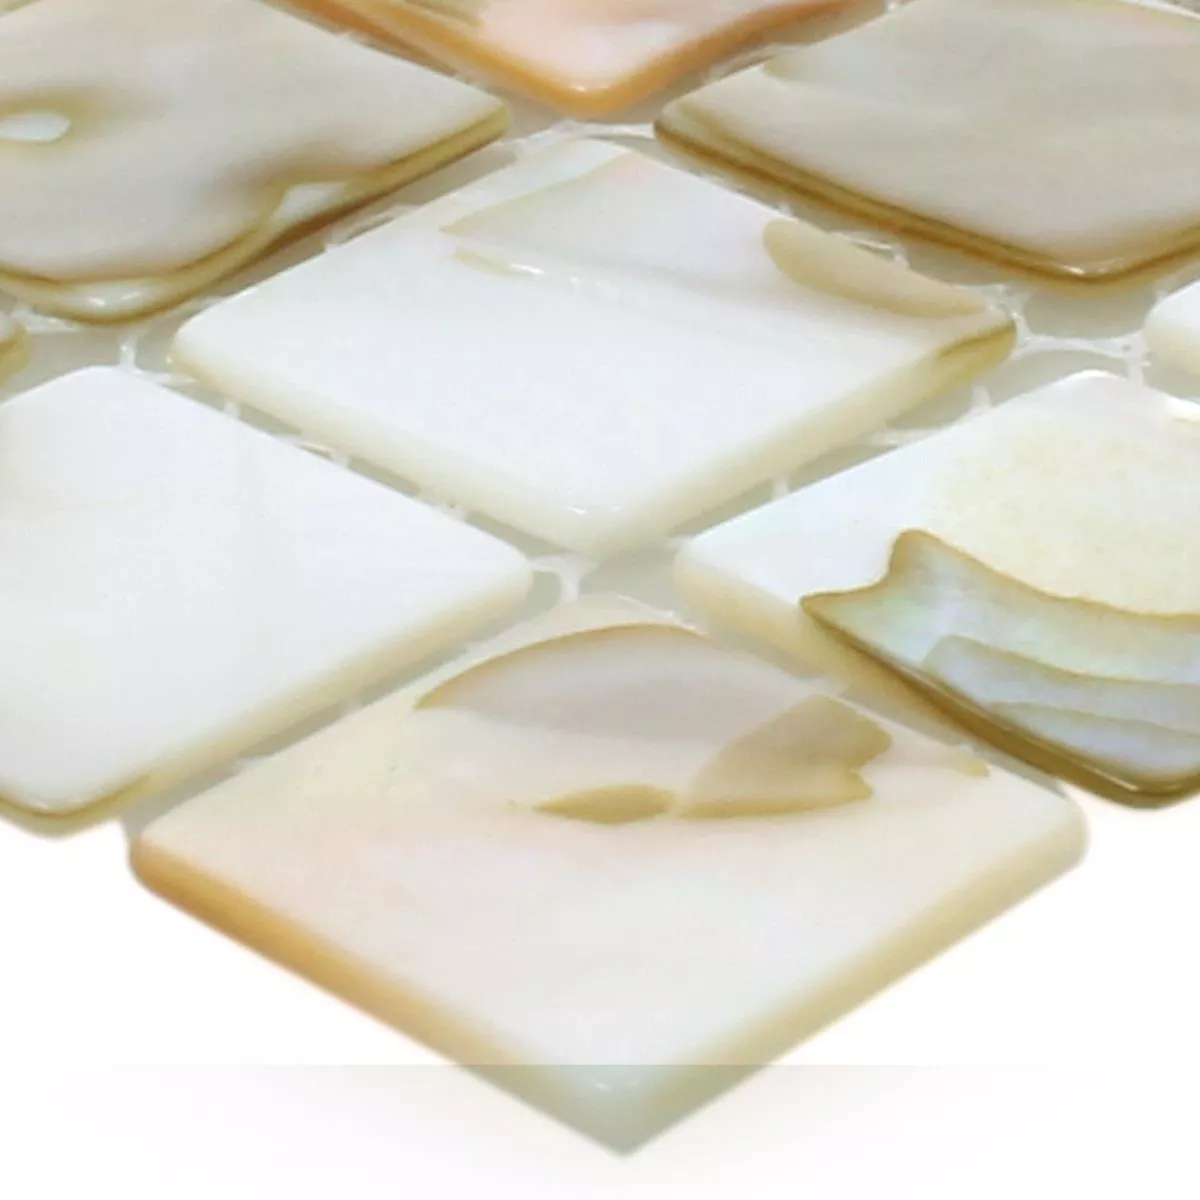 Sample Mosaic Tiles Shell Kordon Light Beige